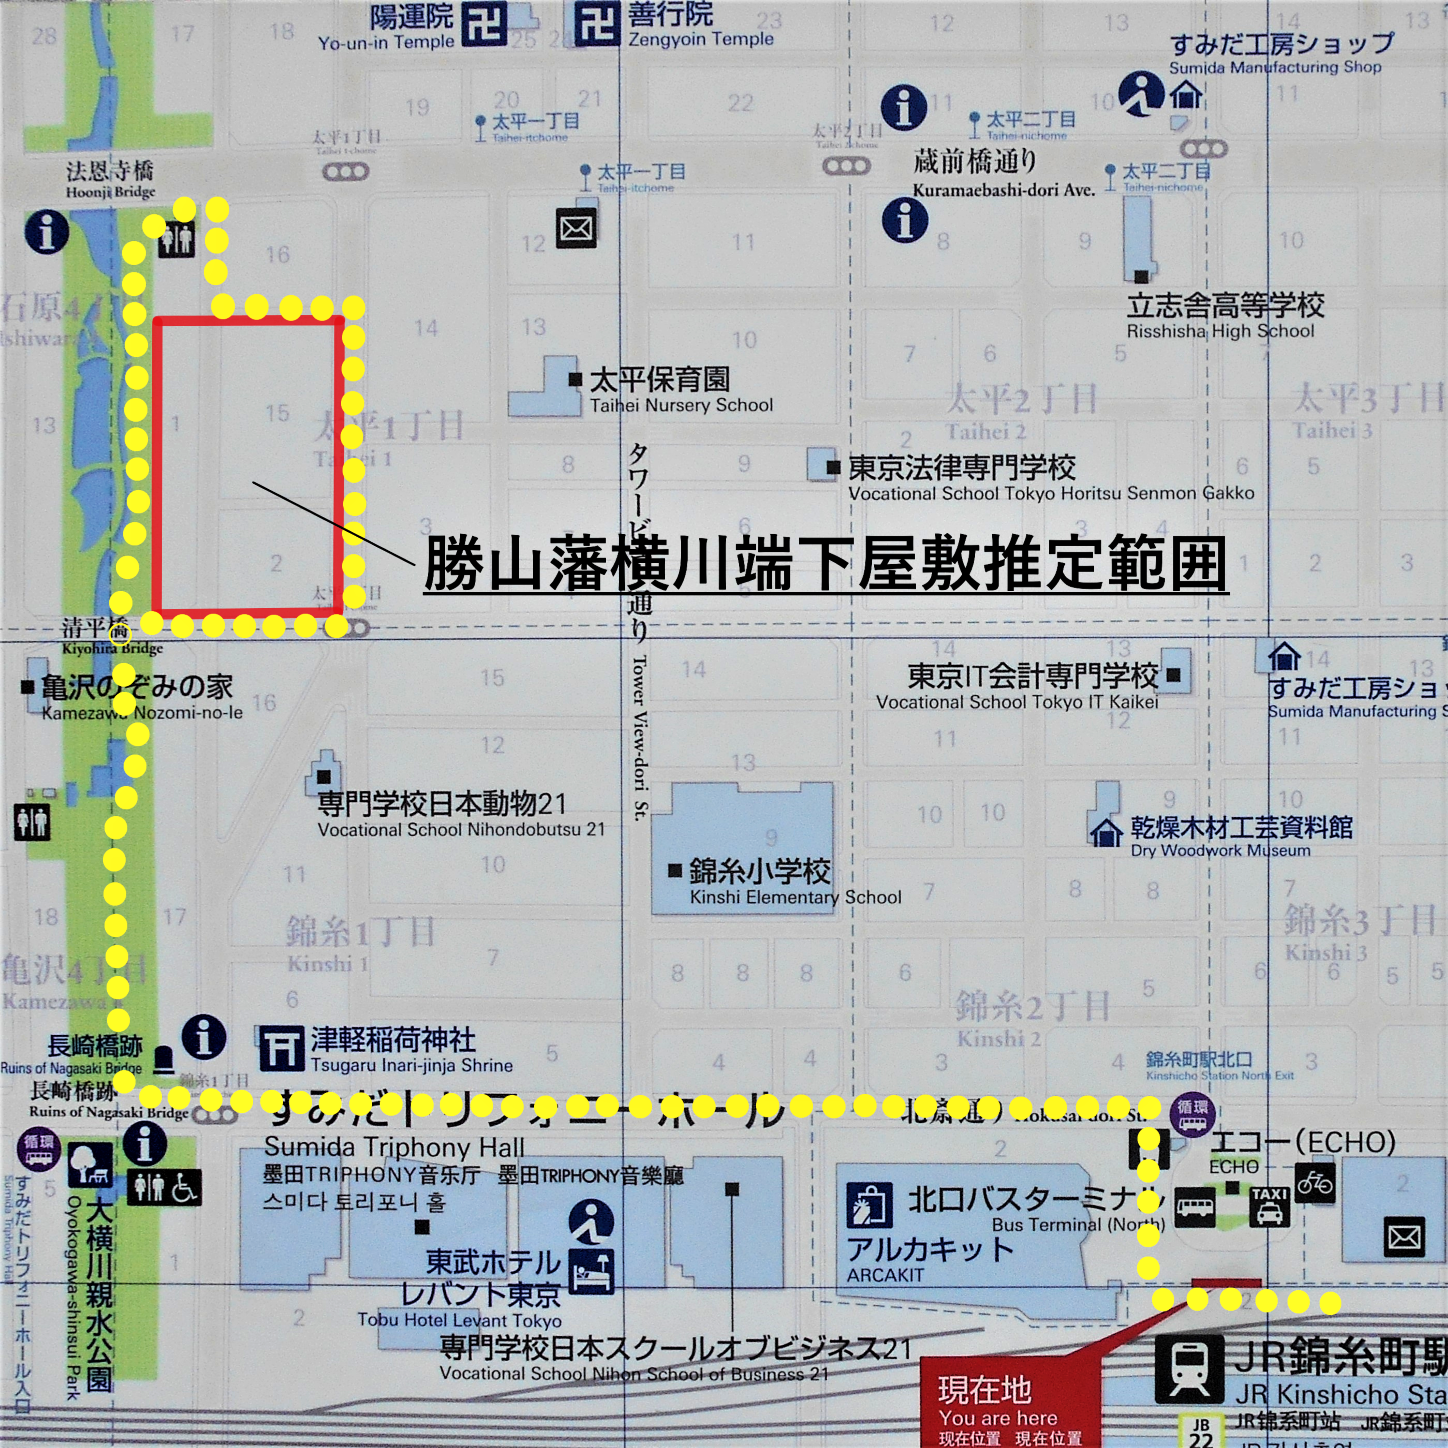 勝山藩横川端下屋敷跡コース図の画像。